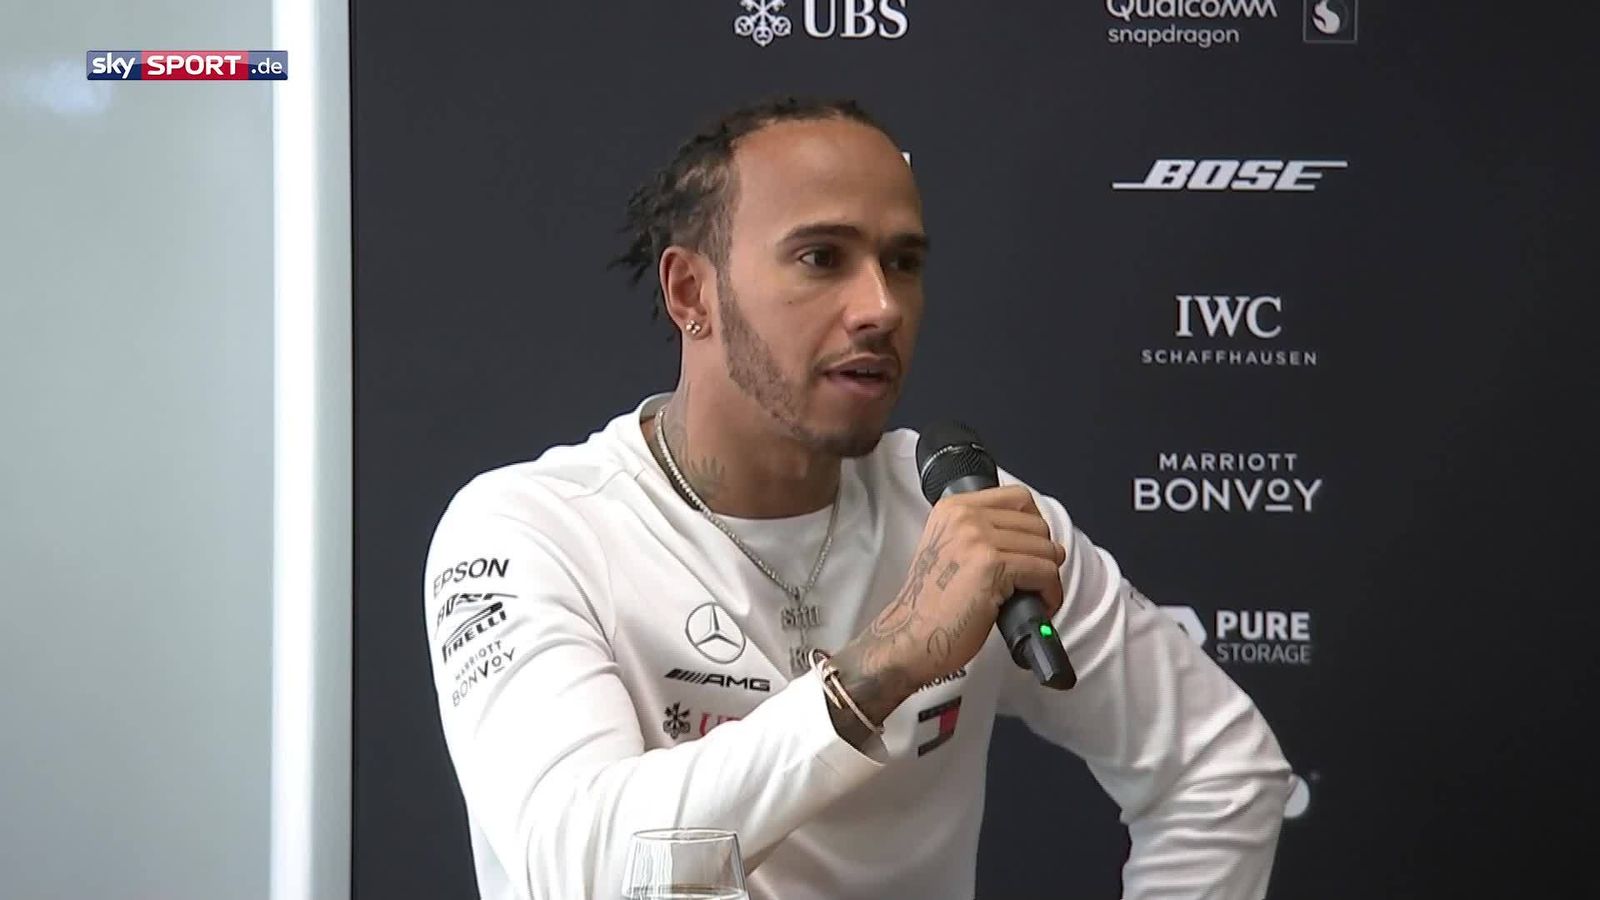 Formel 1: Sechsfacher Weltmeister Lewis Hamilton will nicht aufhören - Sky Sport